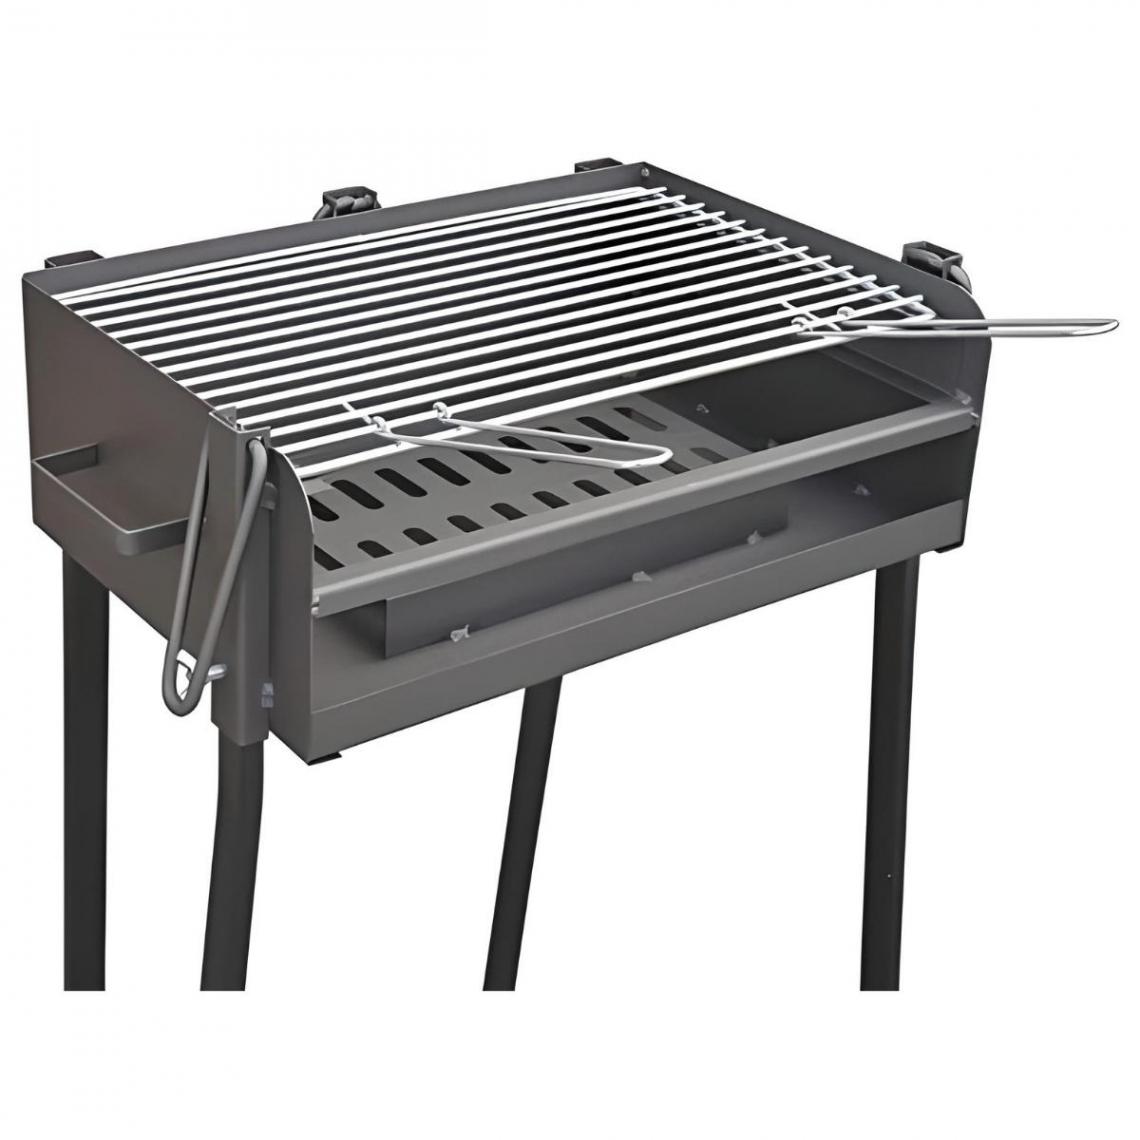 Visiodirect - Barbecue rectangulaire avec support en Acier inoxydable coloris Gris - 50 x 34 x 85 cm - Barbecues charbon de bois